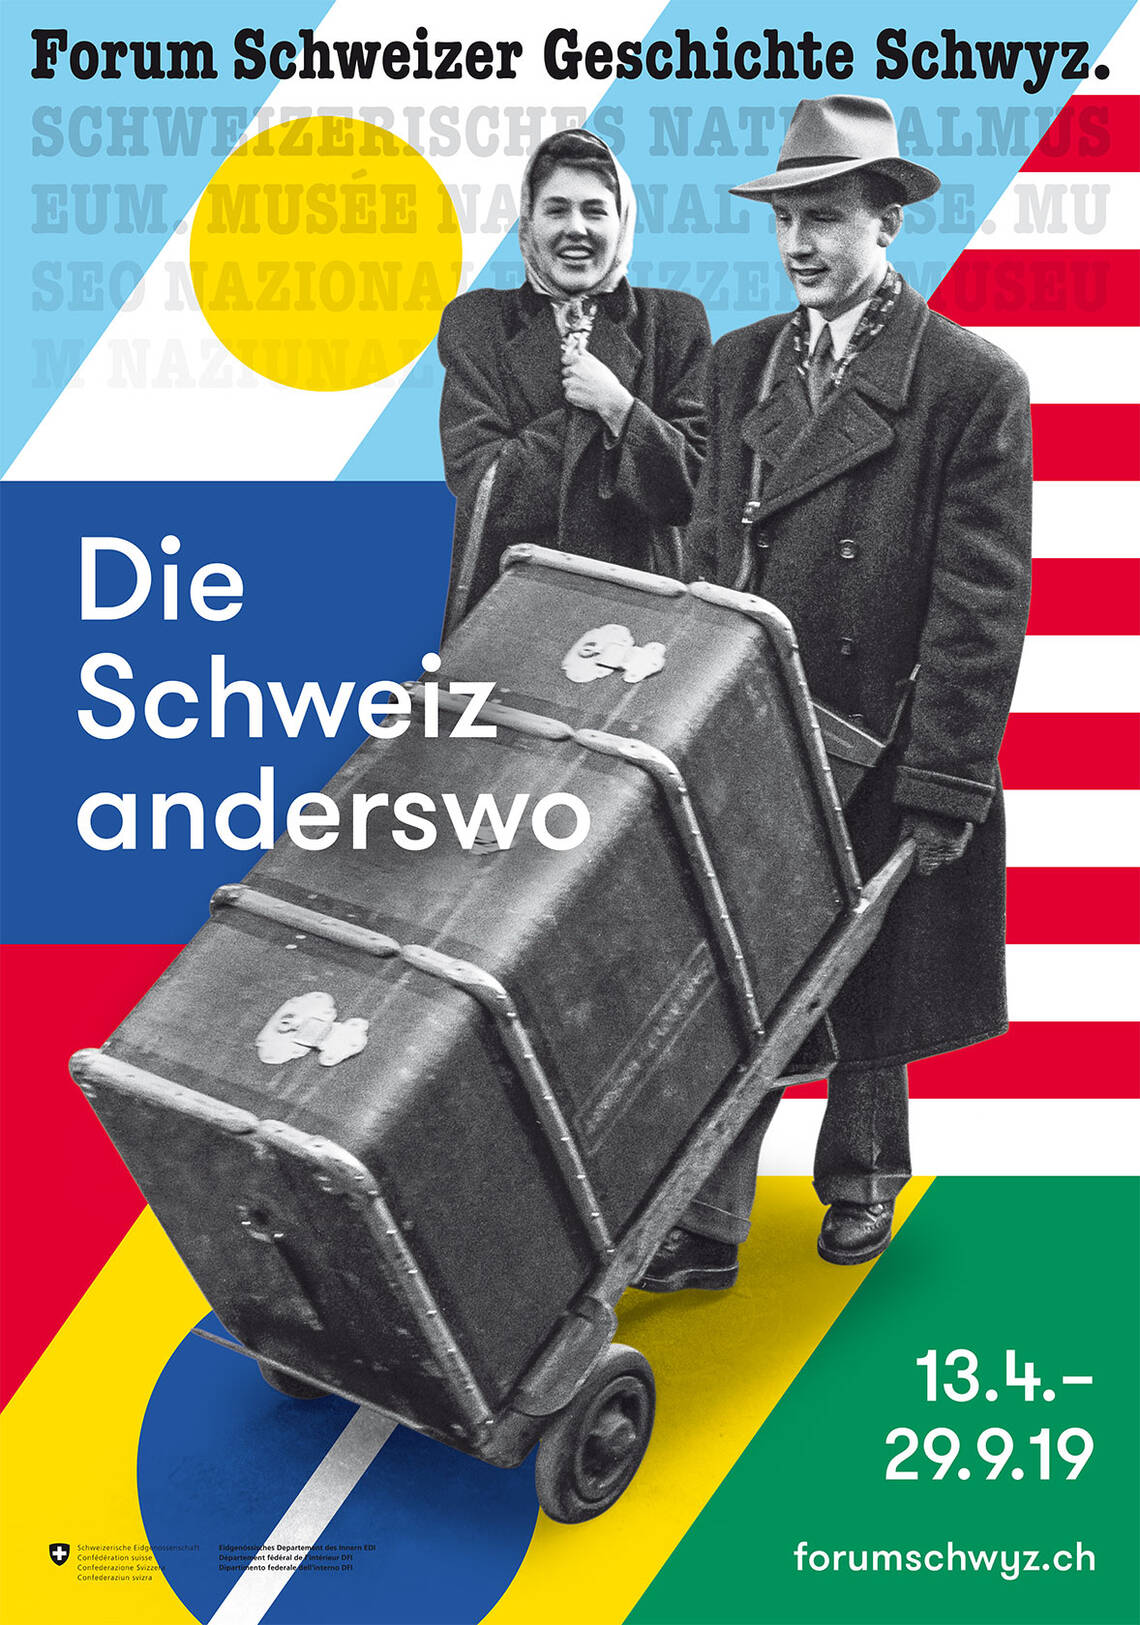 Keyvisual de l'exposition "La Suisse ailleurs" - il montre un couple, l'homme poussant une grande valise d'outre-mer.